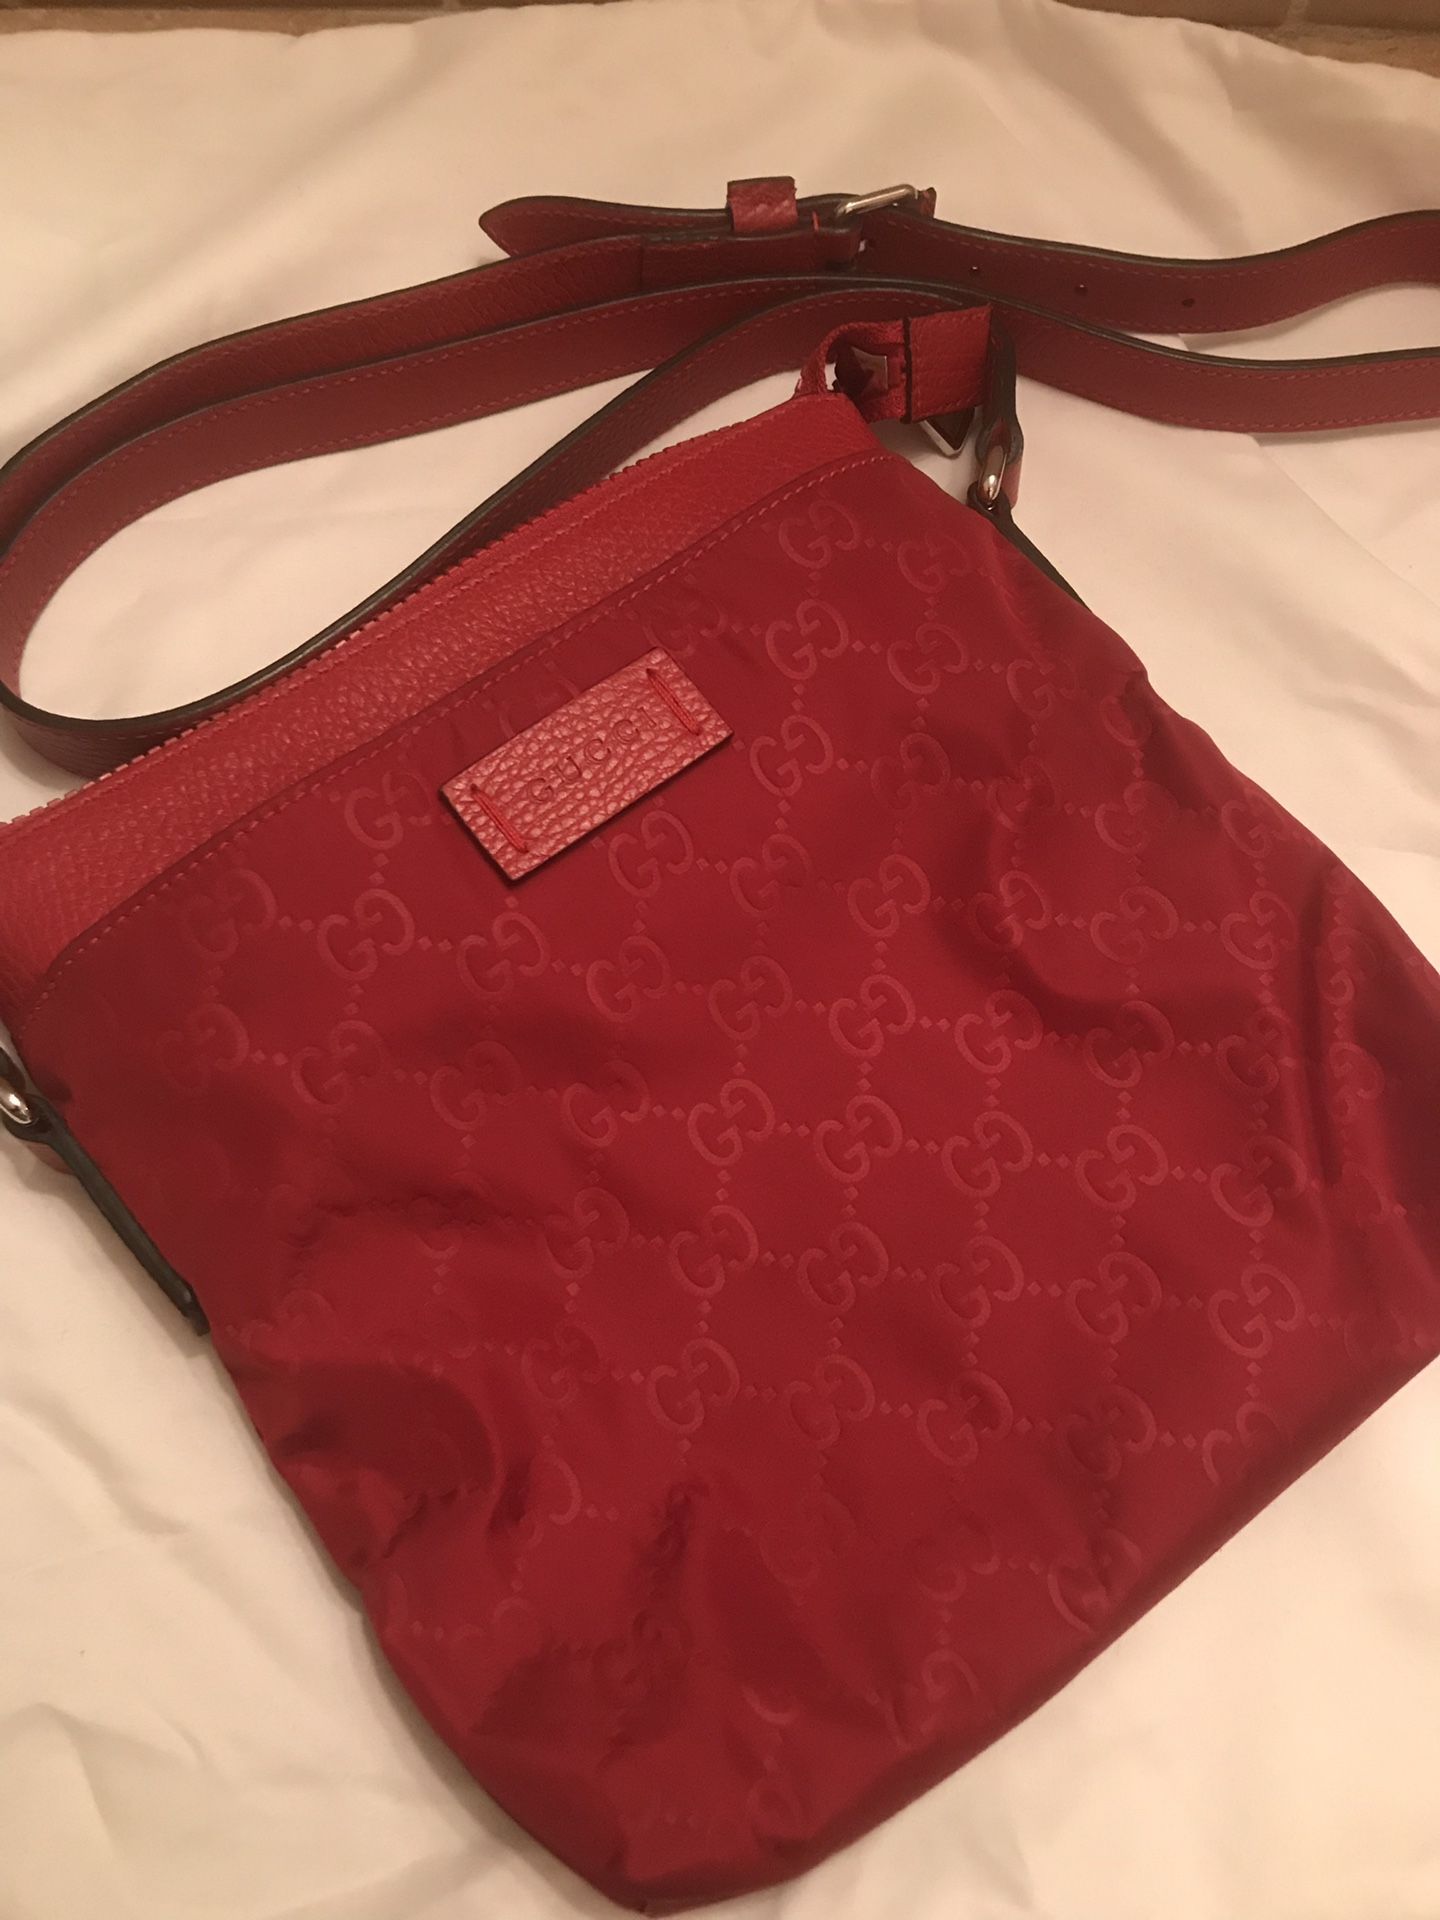 Authentic GG Guccissima Mini Messenger Bag.